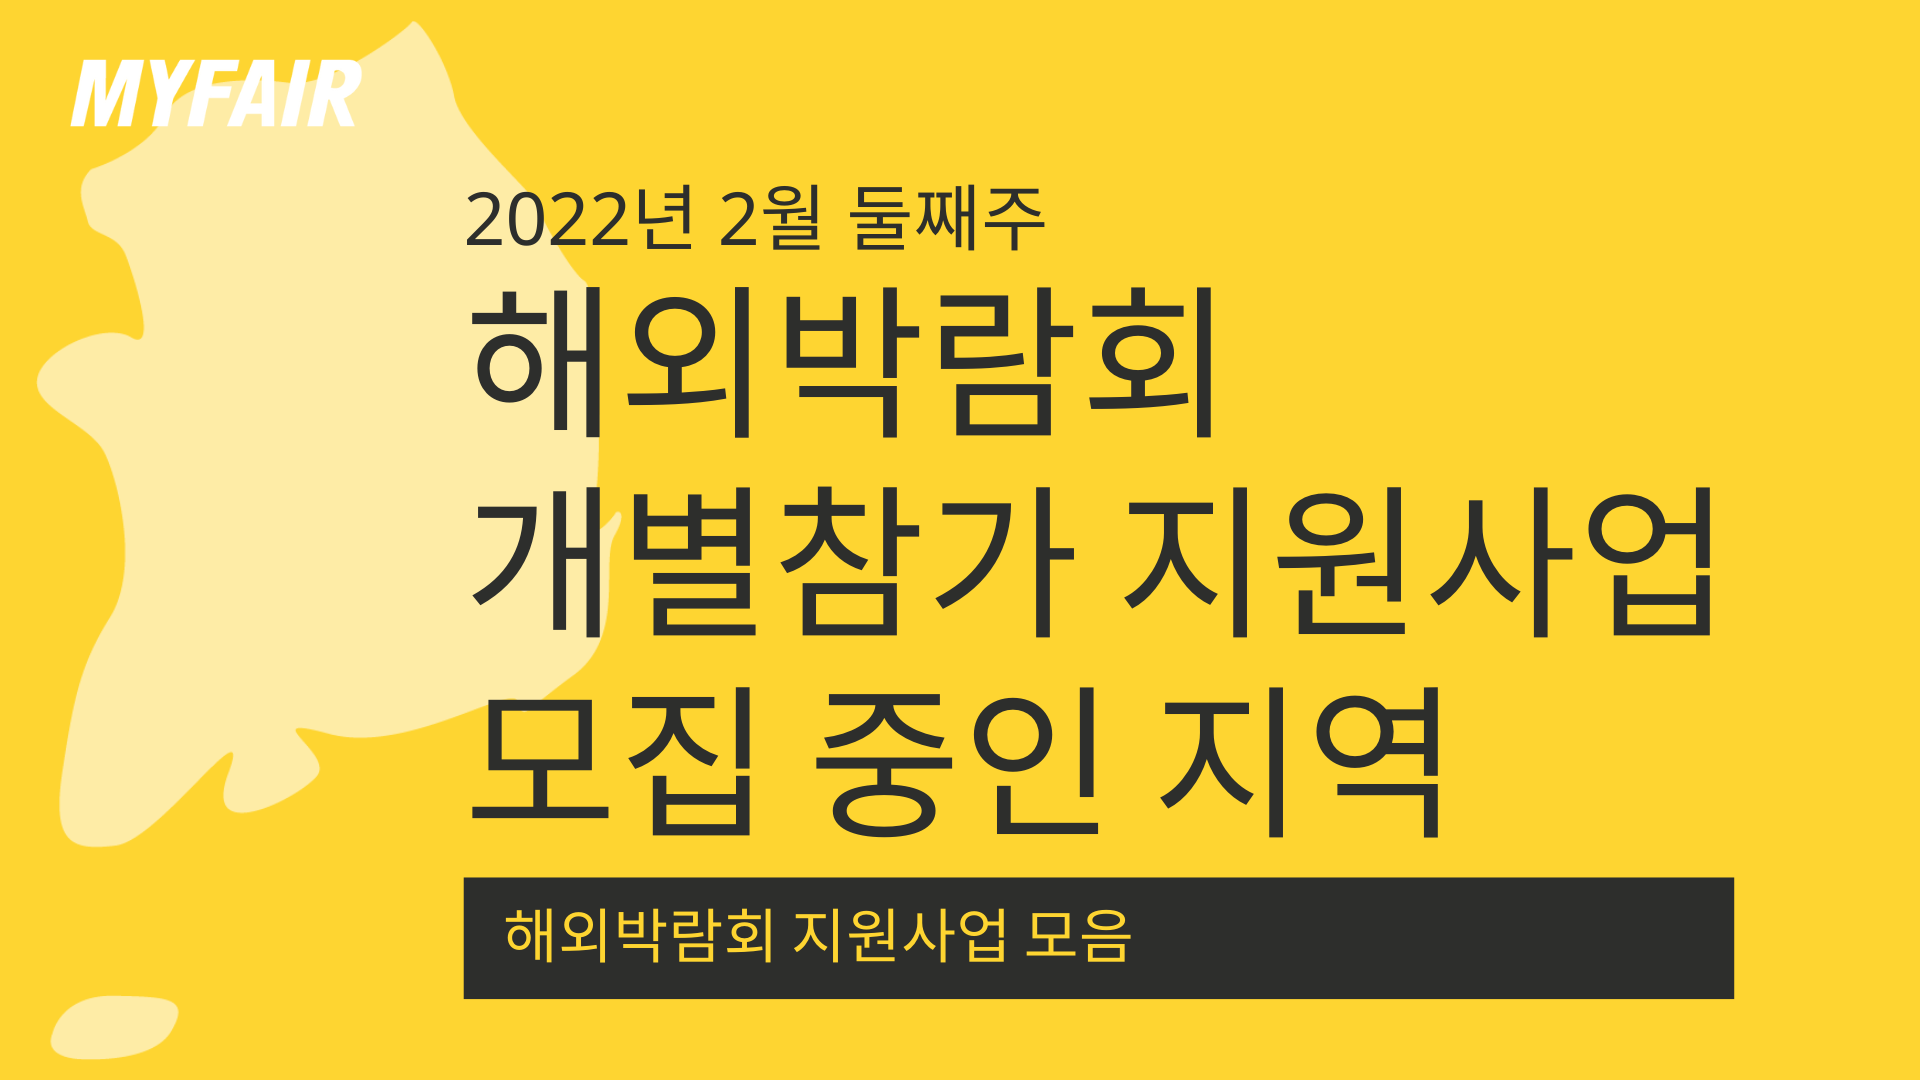 [마이페어] 2022년 해외박람회 개별참가 지원사업 모집 지역 (02.10 기준)